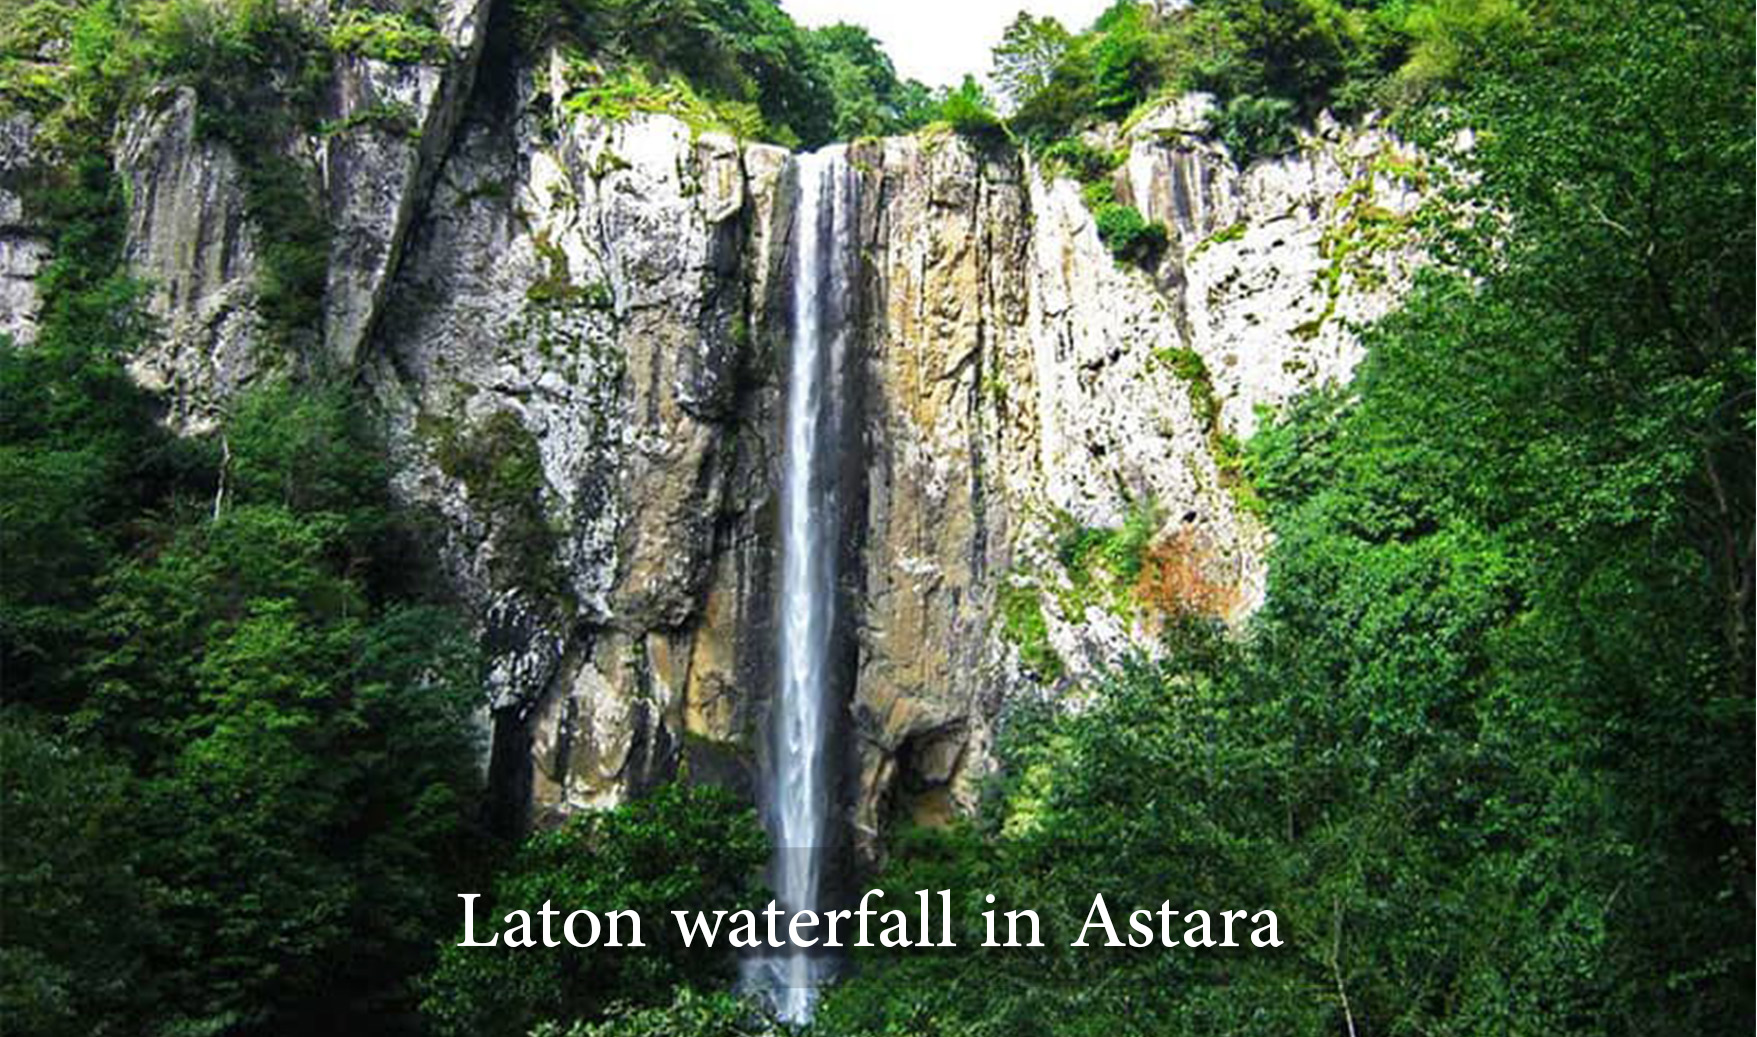 Laton waterfall in Astara